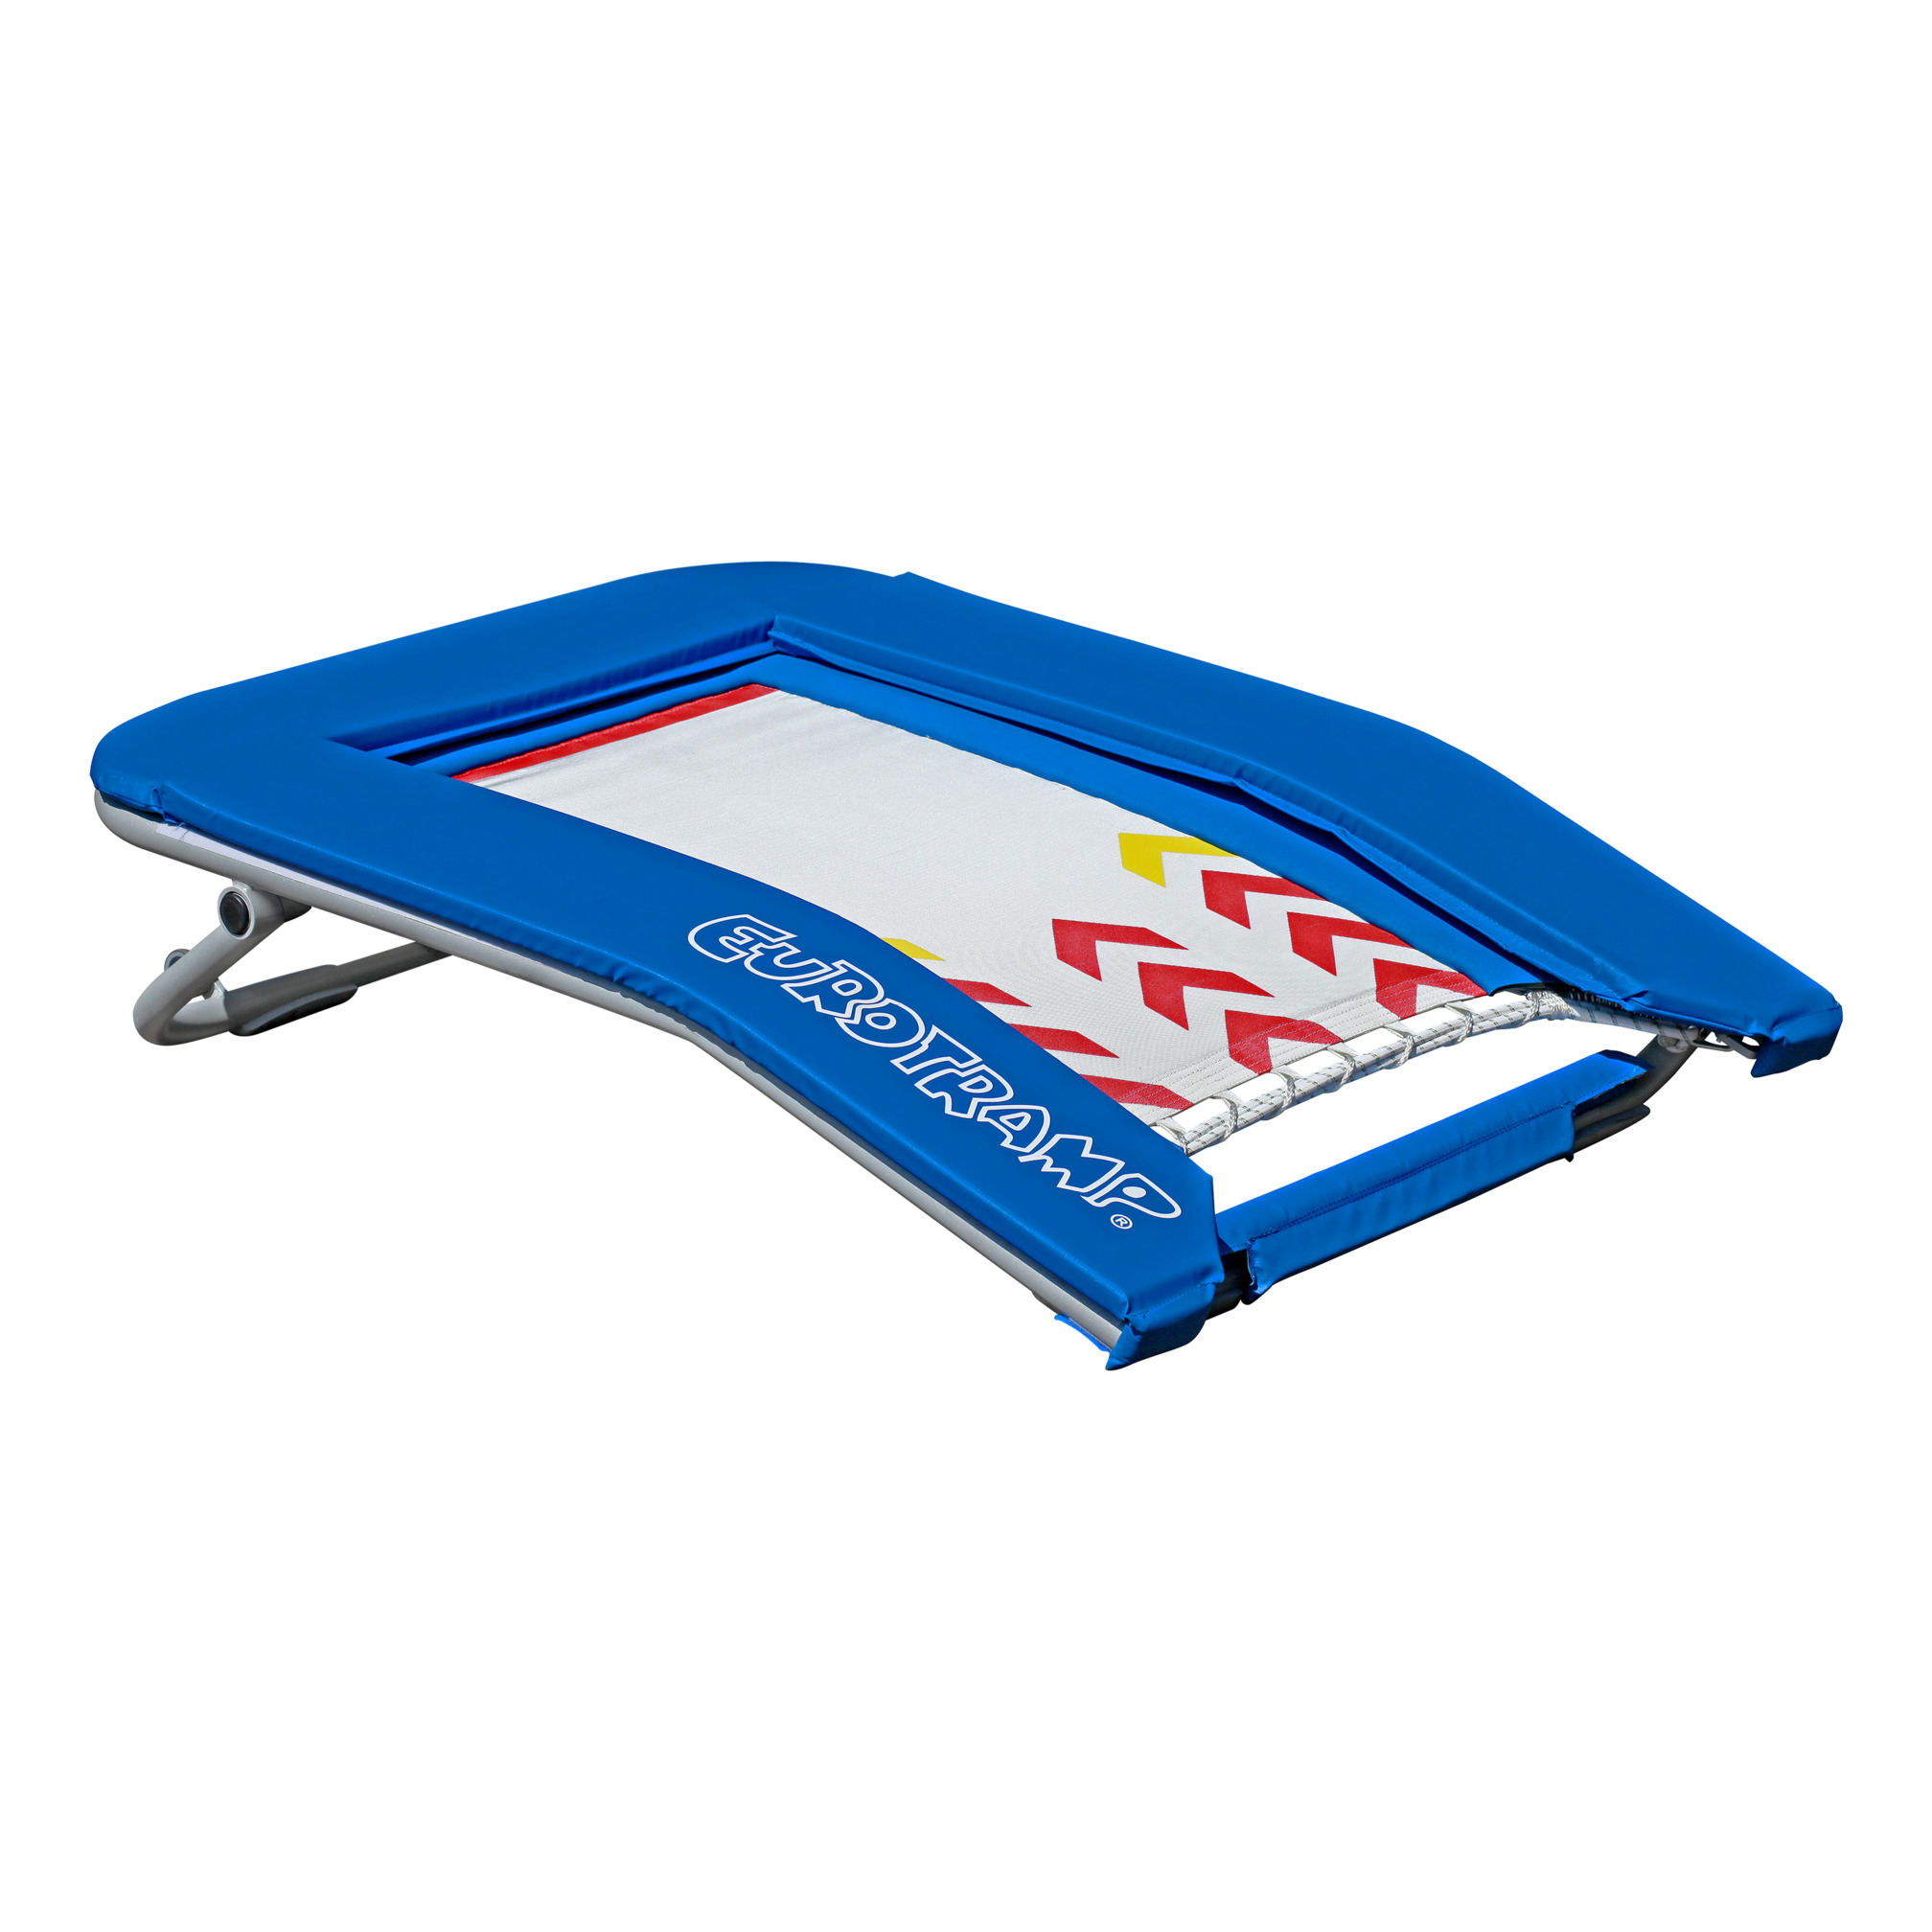 Open-end trampoline Booster Board